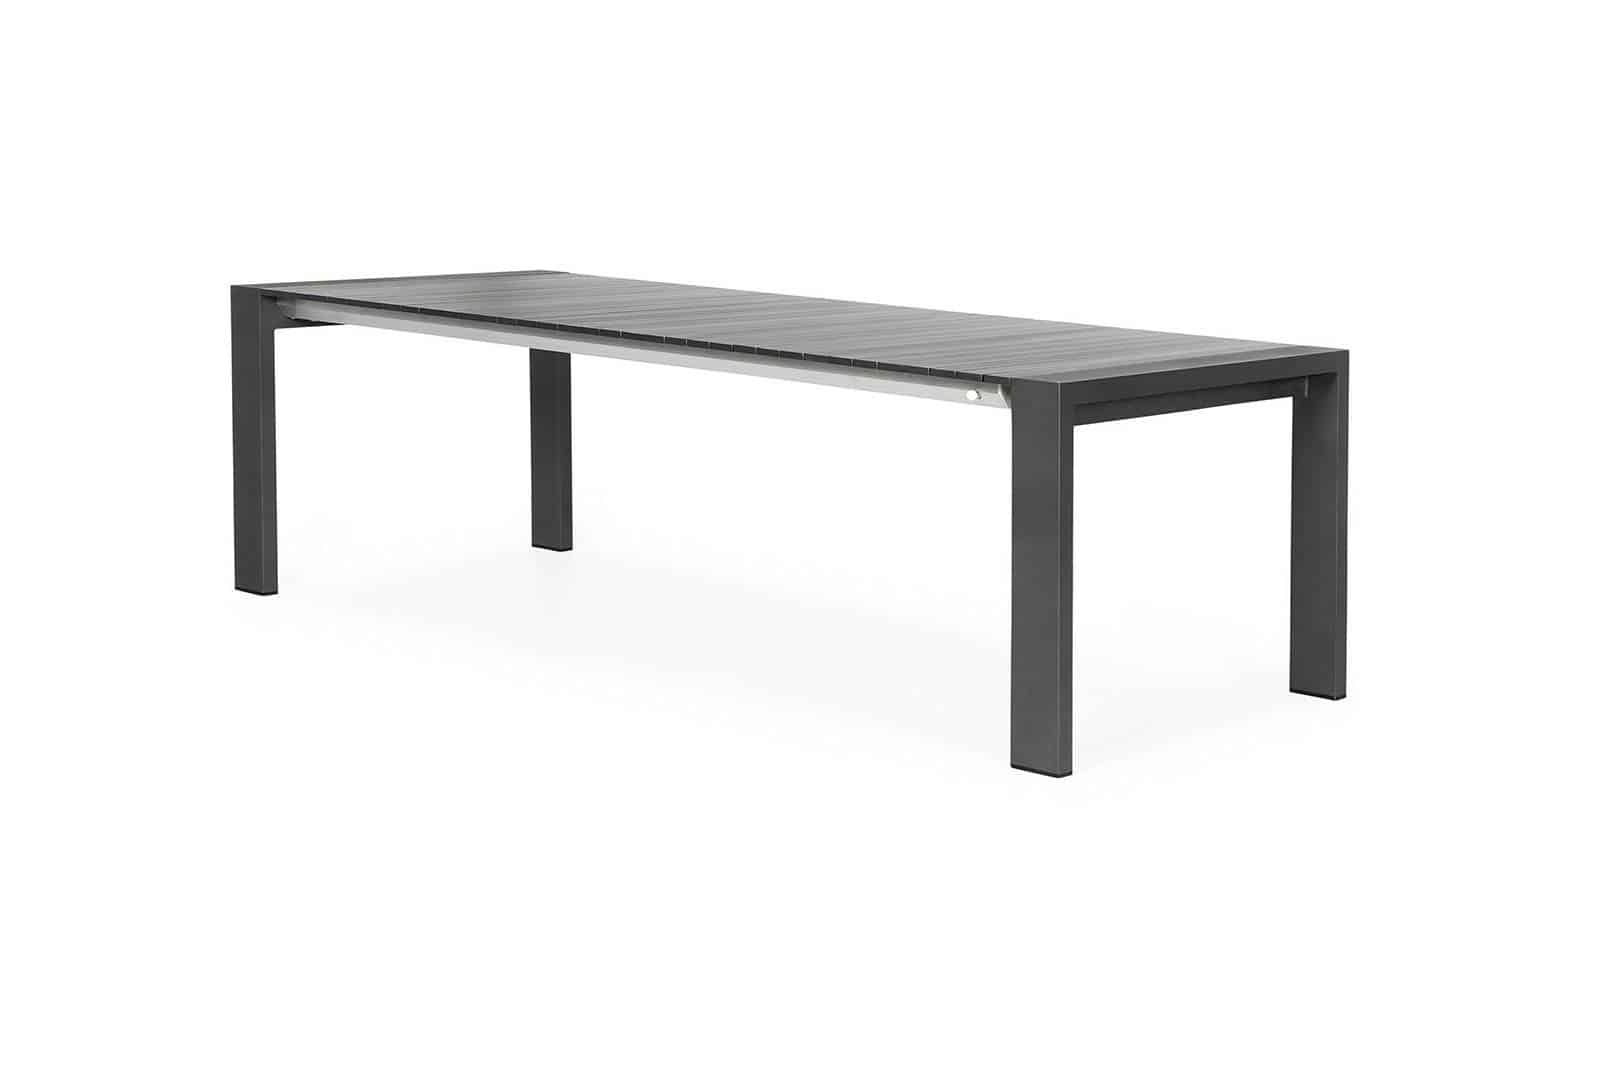 stol-ogrodowy-rozkladany-aluminiowy-rialto-217-cm-antracyt